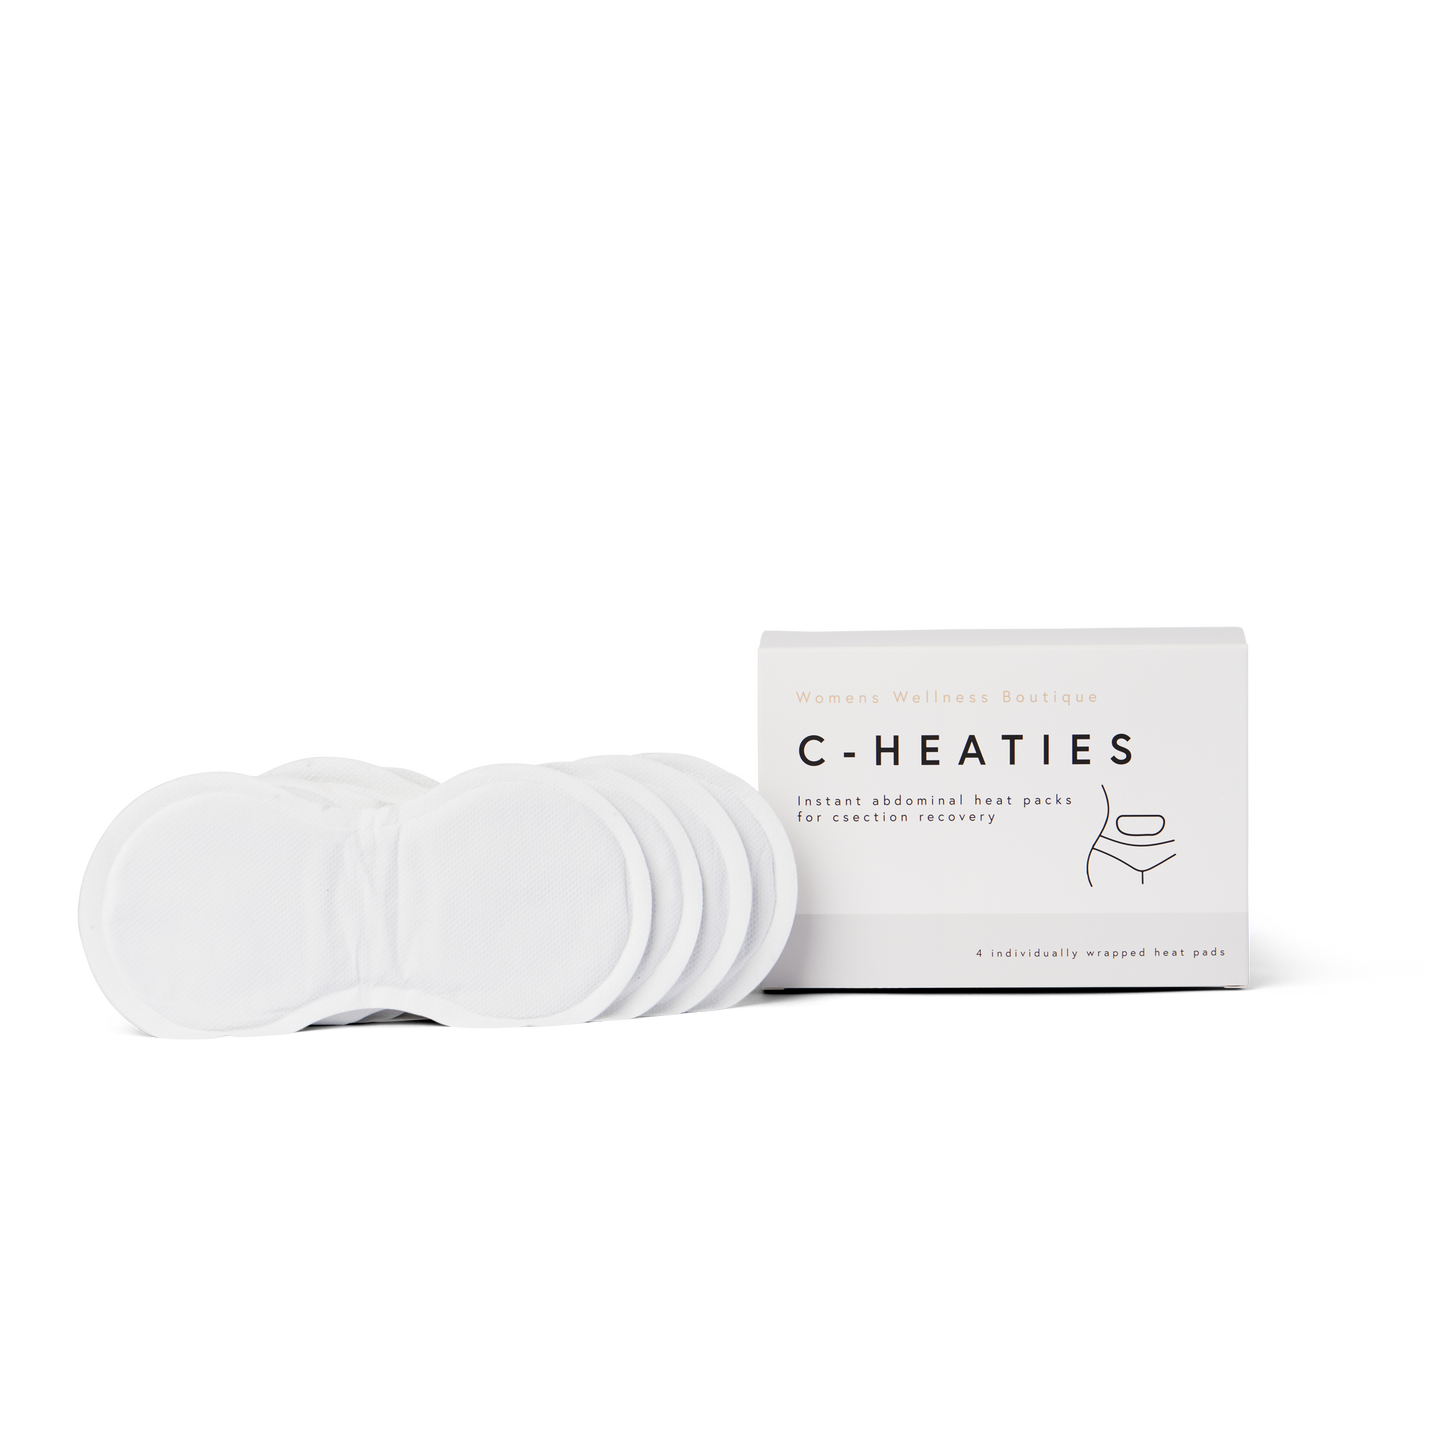 C-Heaties - Instant C-section Heat Packs